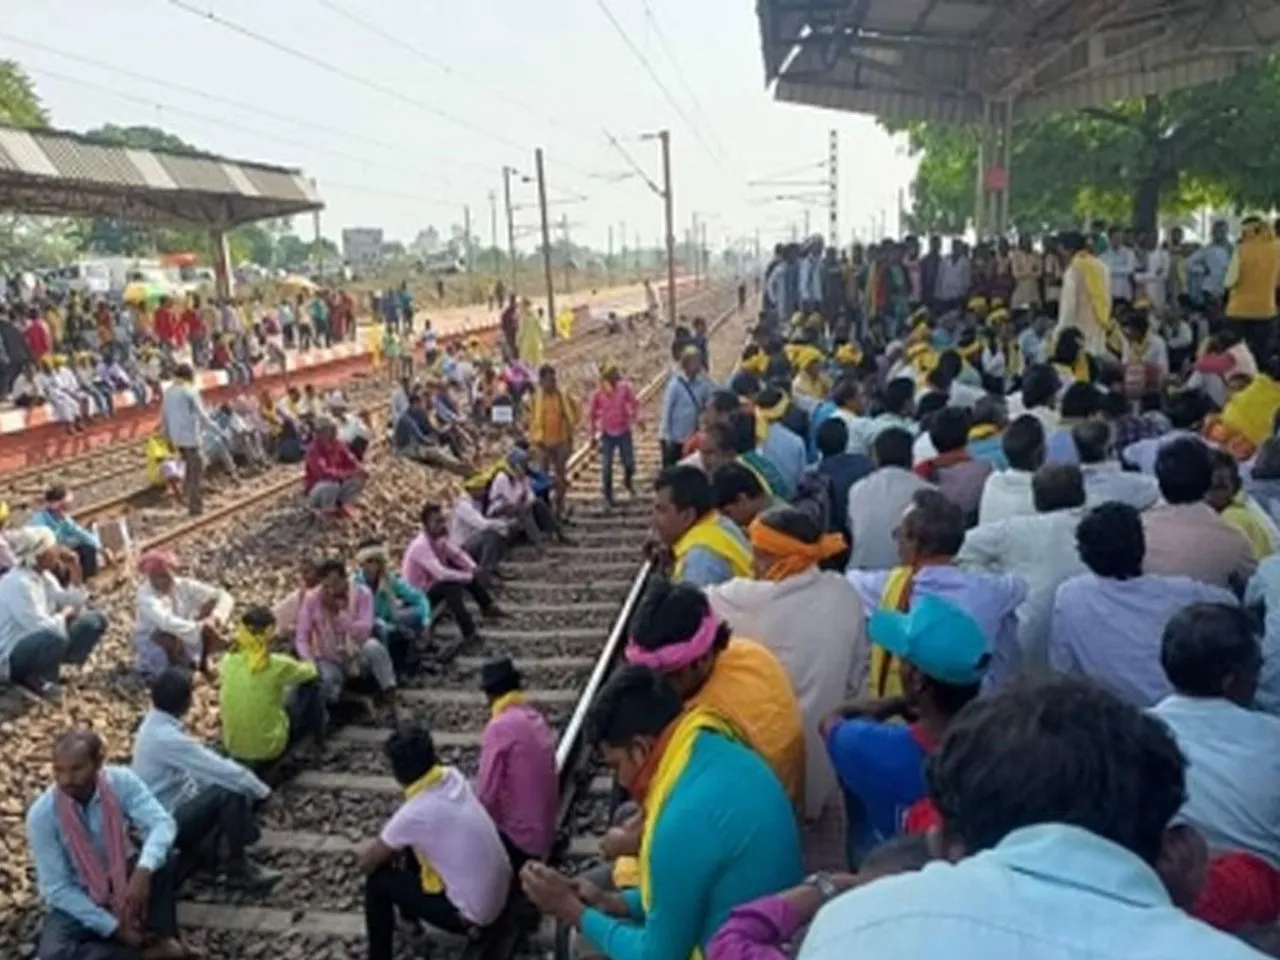 Rail Blockade by Kurmi society